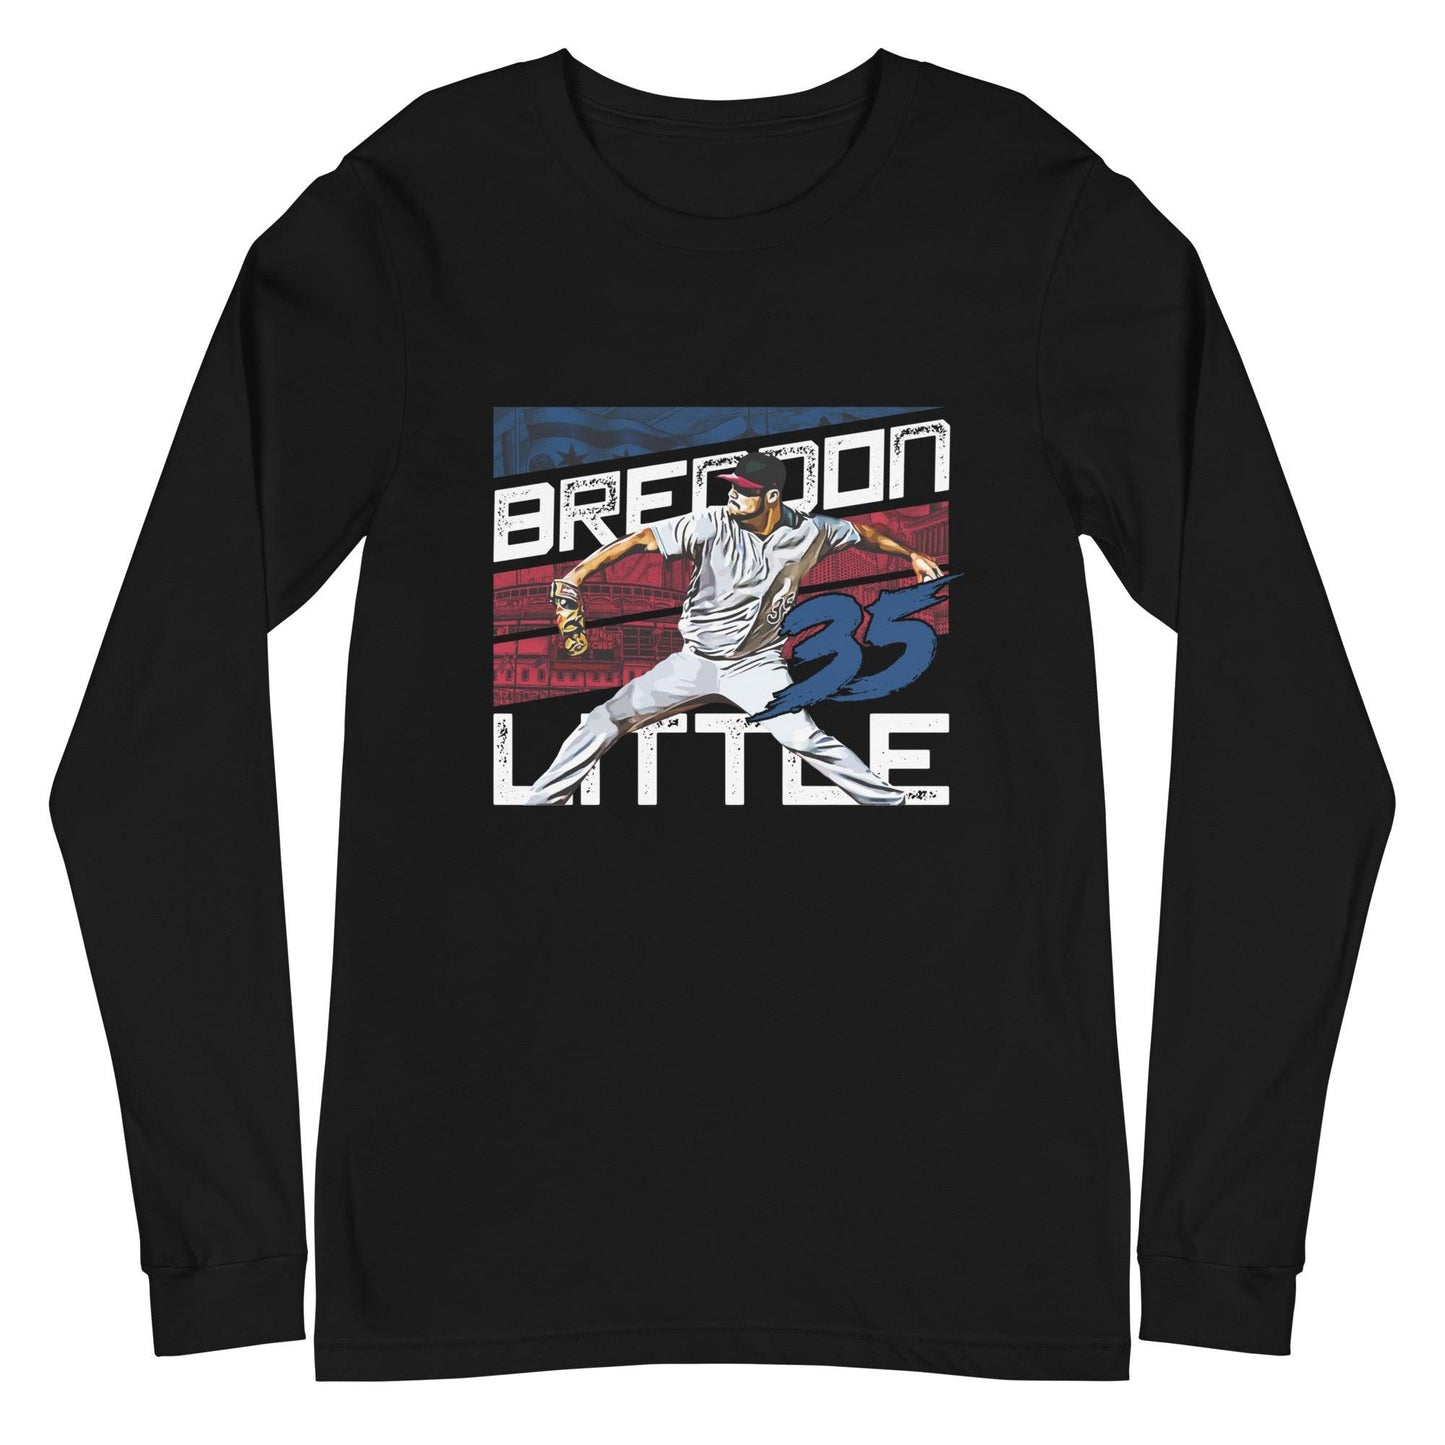 Brendon Little "35" Long Sleeve Tee - Fan Arch